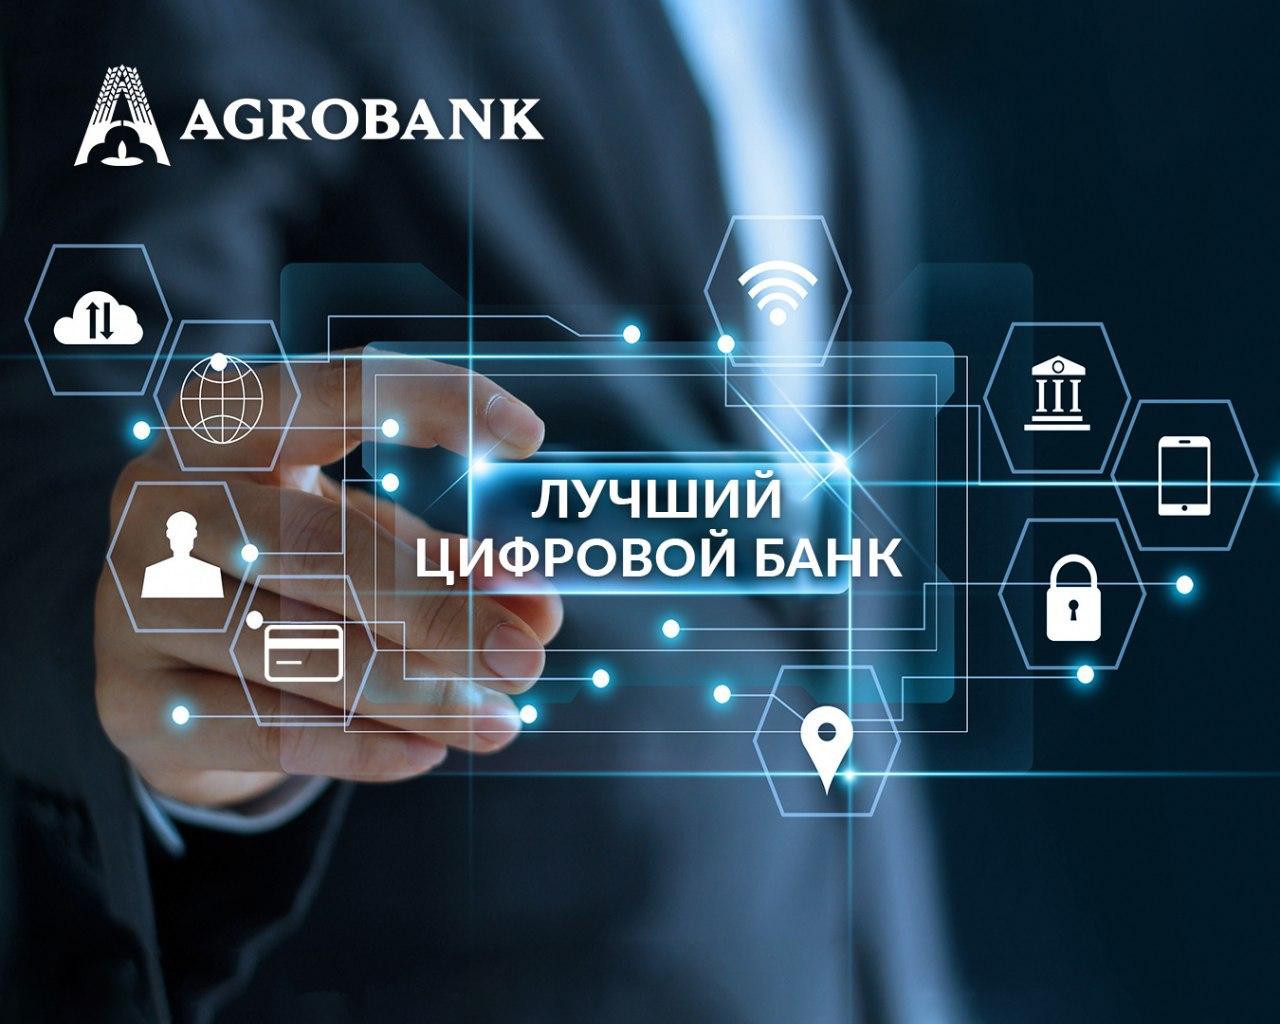 «Агробанк» получил награду Best Digital Bank от делового издания Asiamoney